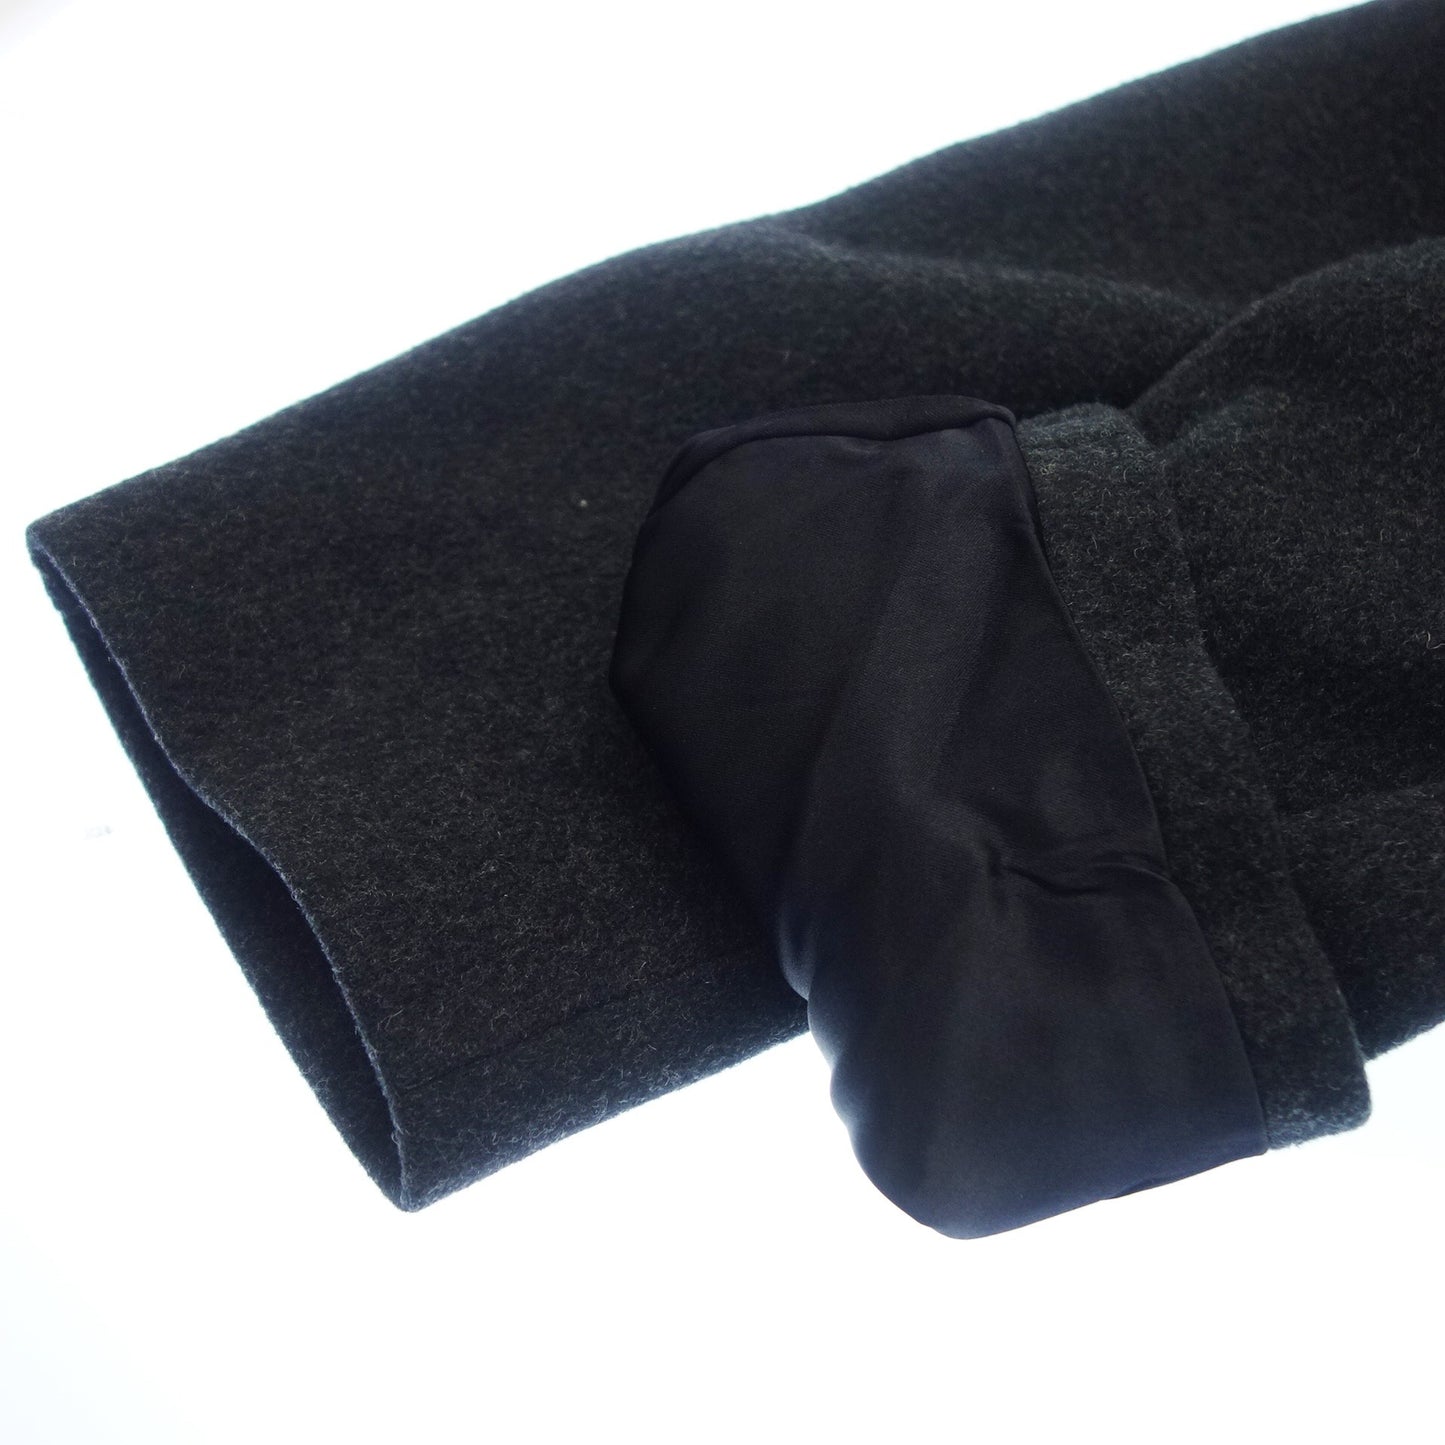 Used◆Burberrys long coat wool men's black Burberrys [AFA14] 